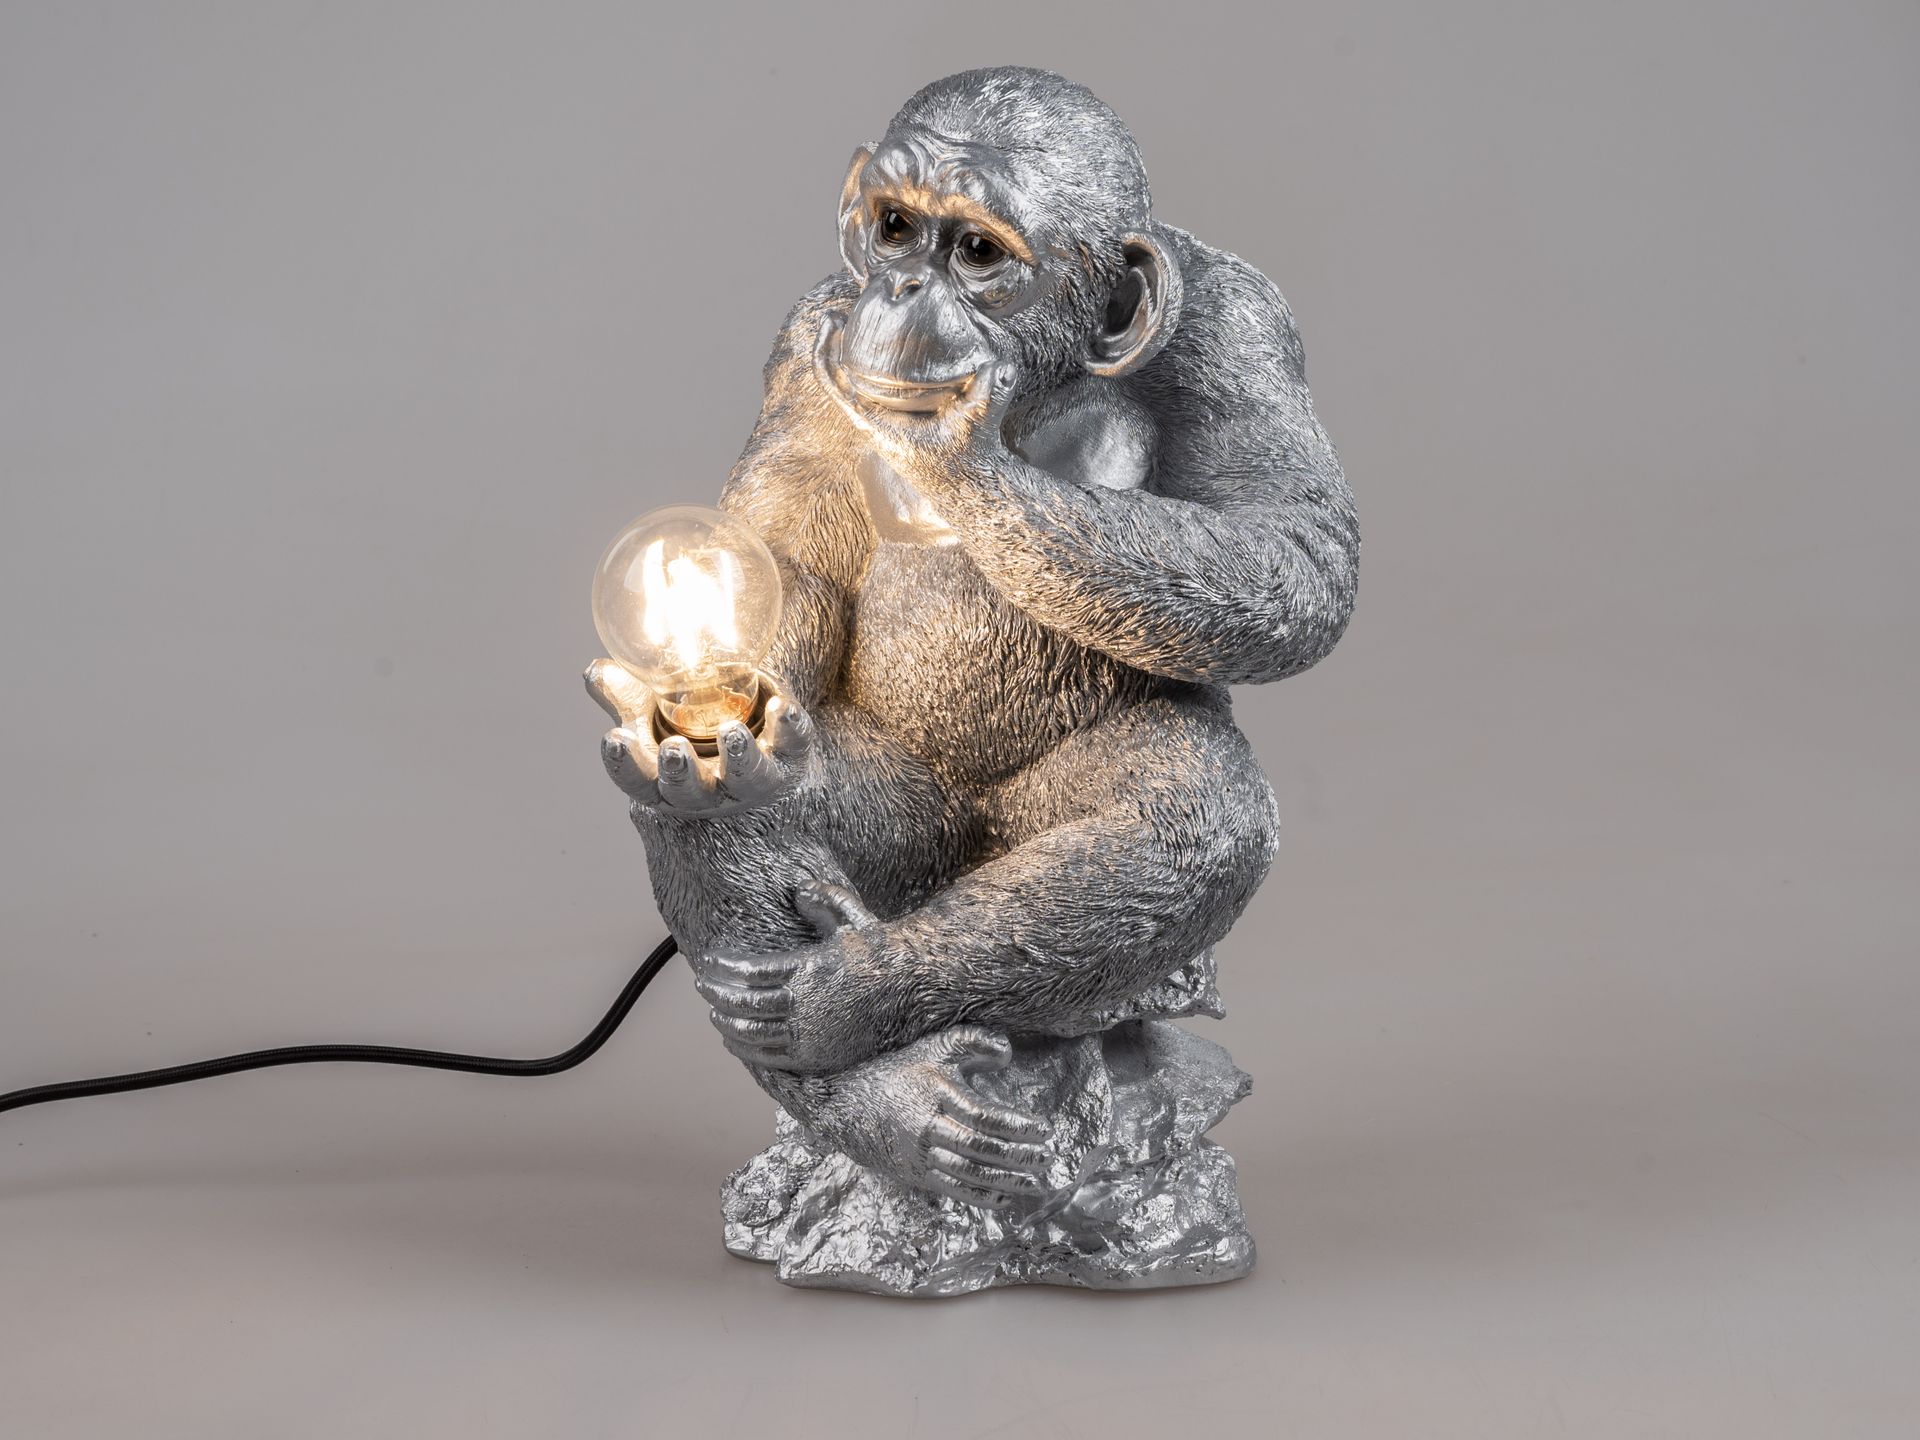 Monkey Business: Stimmungslampe 41 cm x 25 cm in Form eines antik-silbernen Affen, handgefertigte Deko-Leuchte aus Kunststein